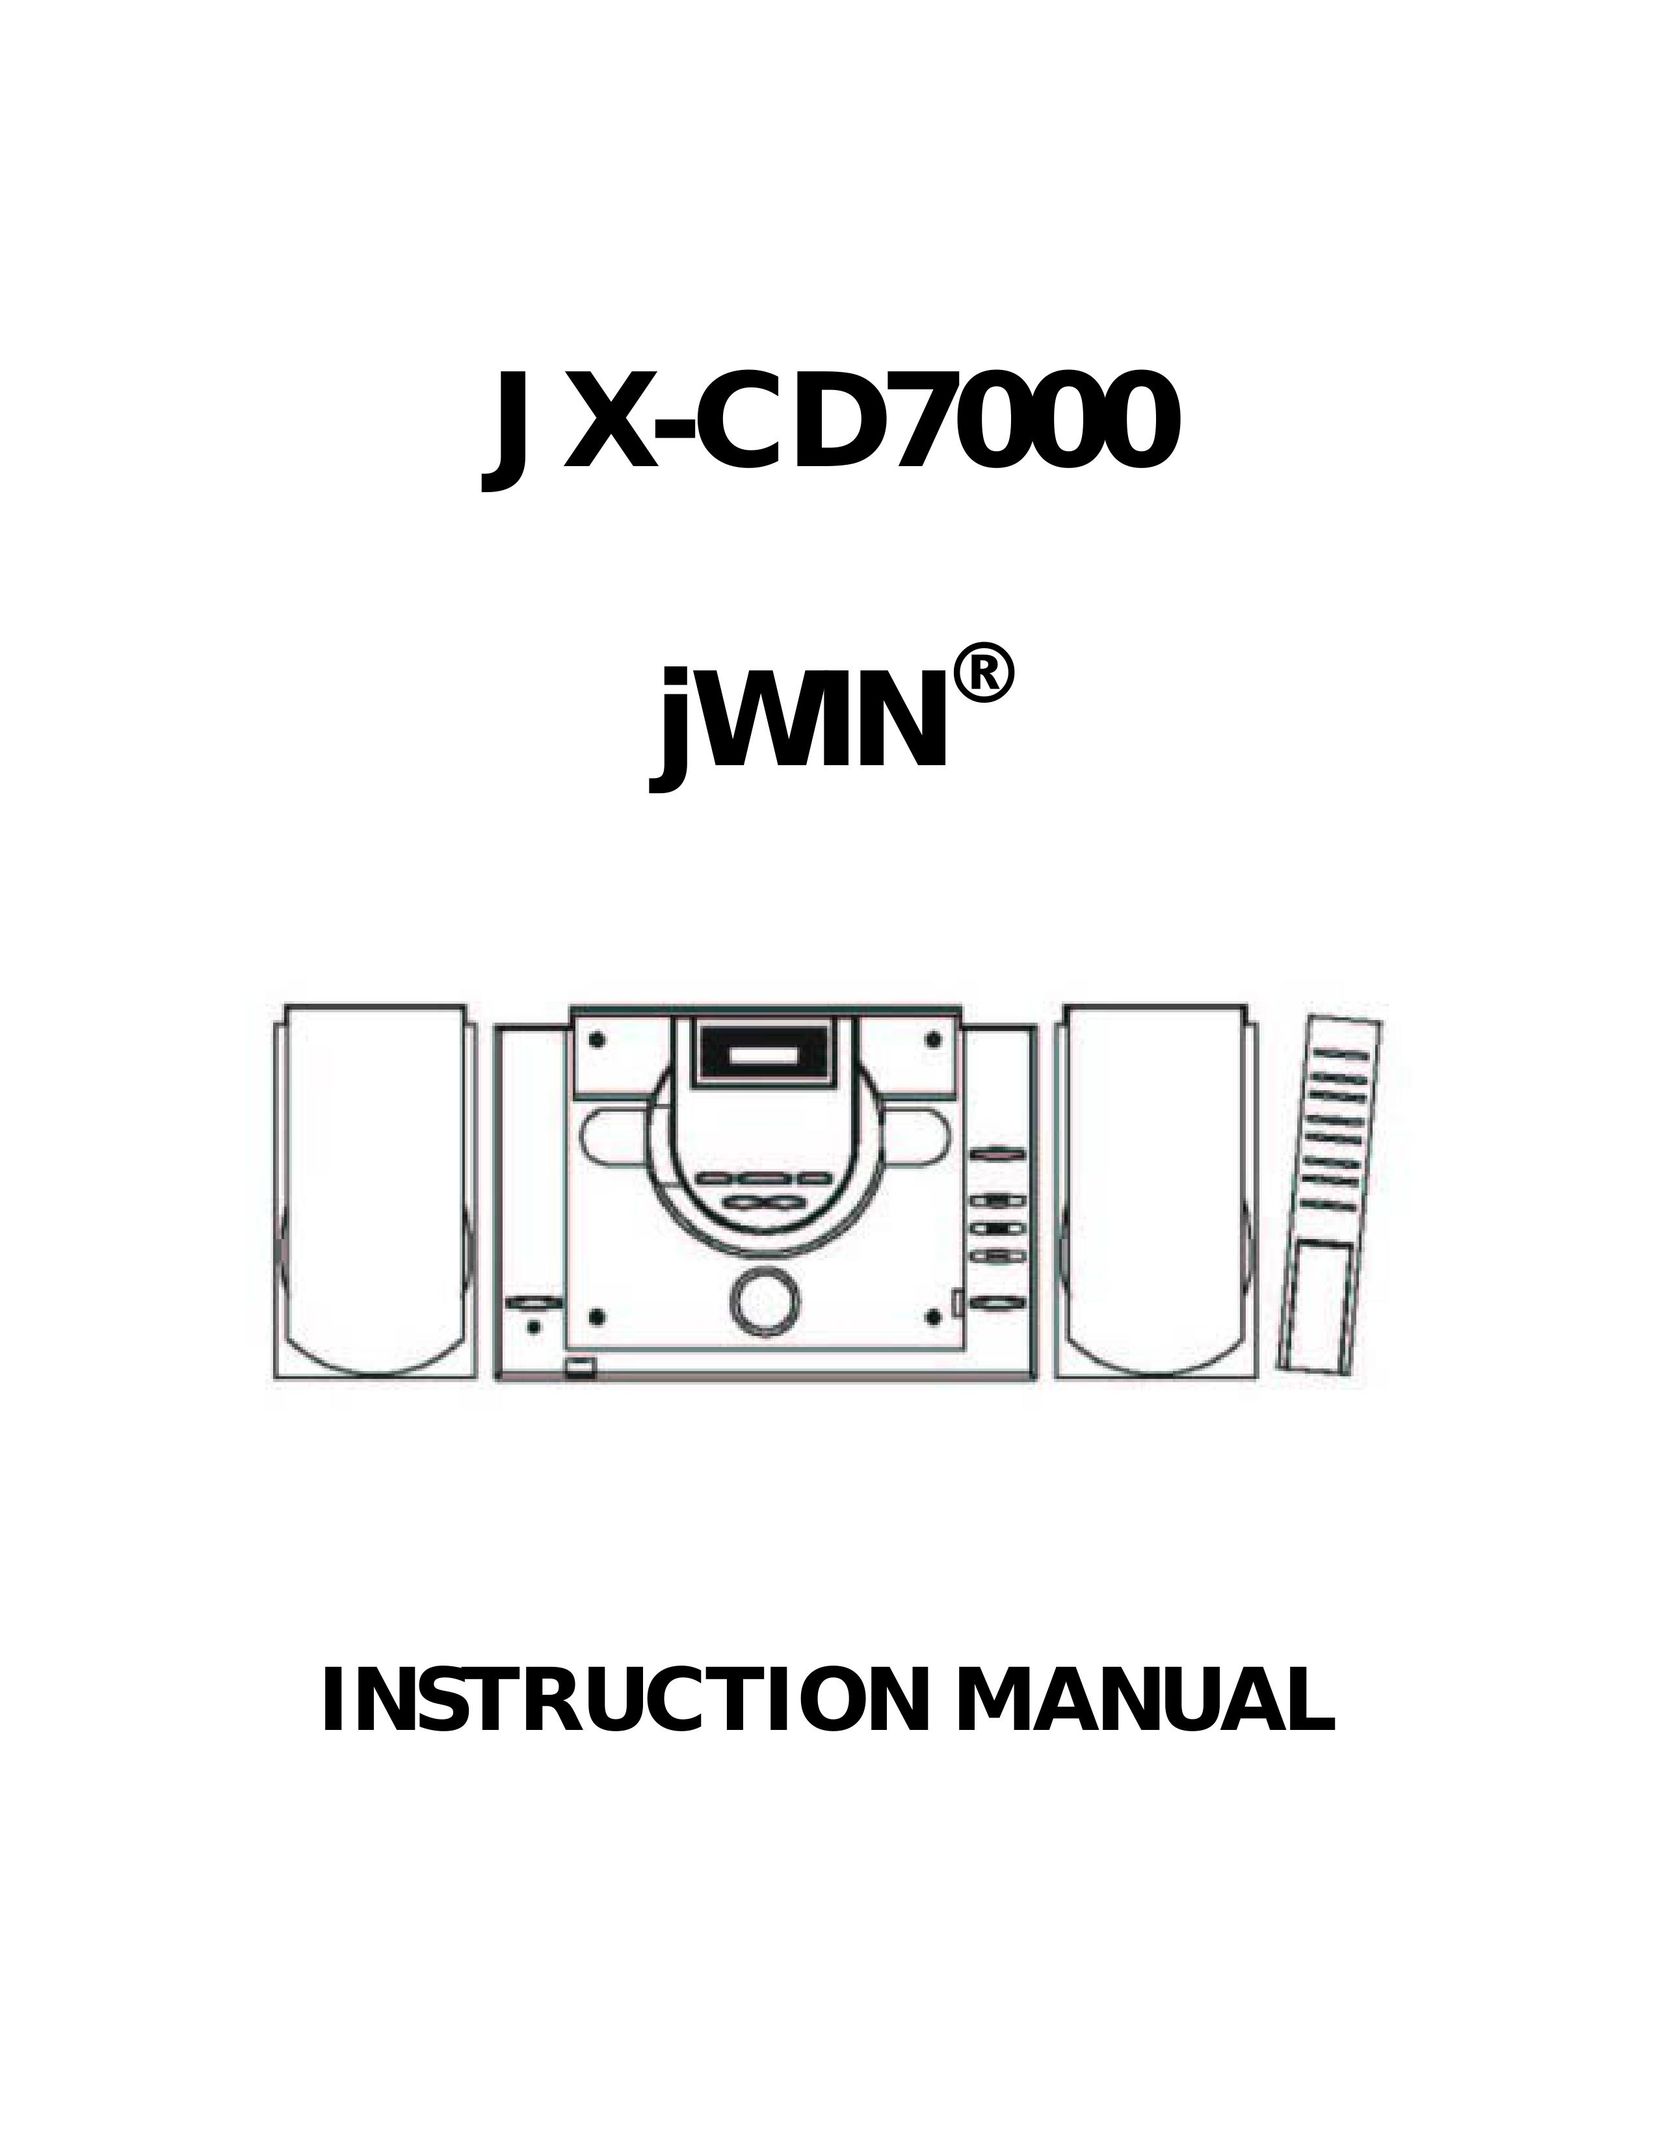 Jwin JX-CD7000 CD Player User Manual